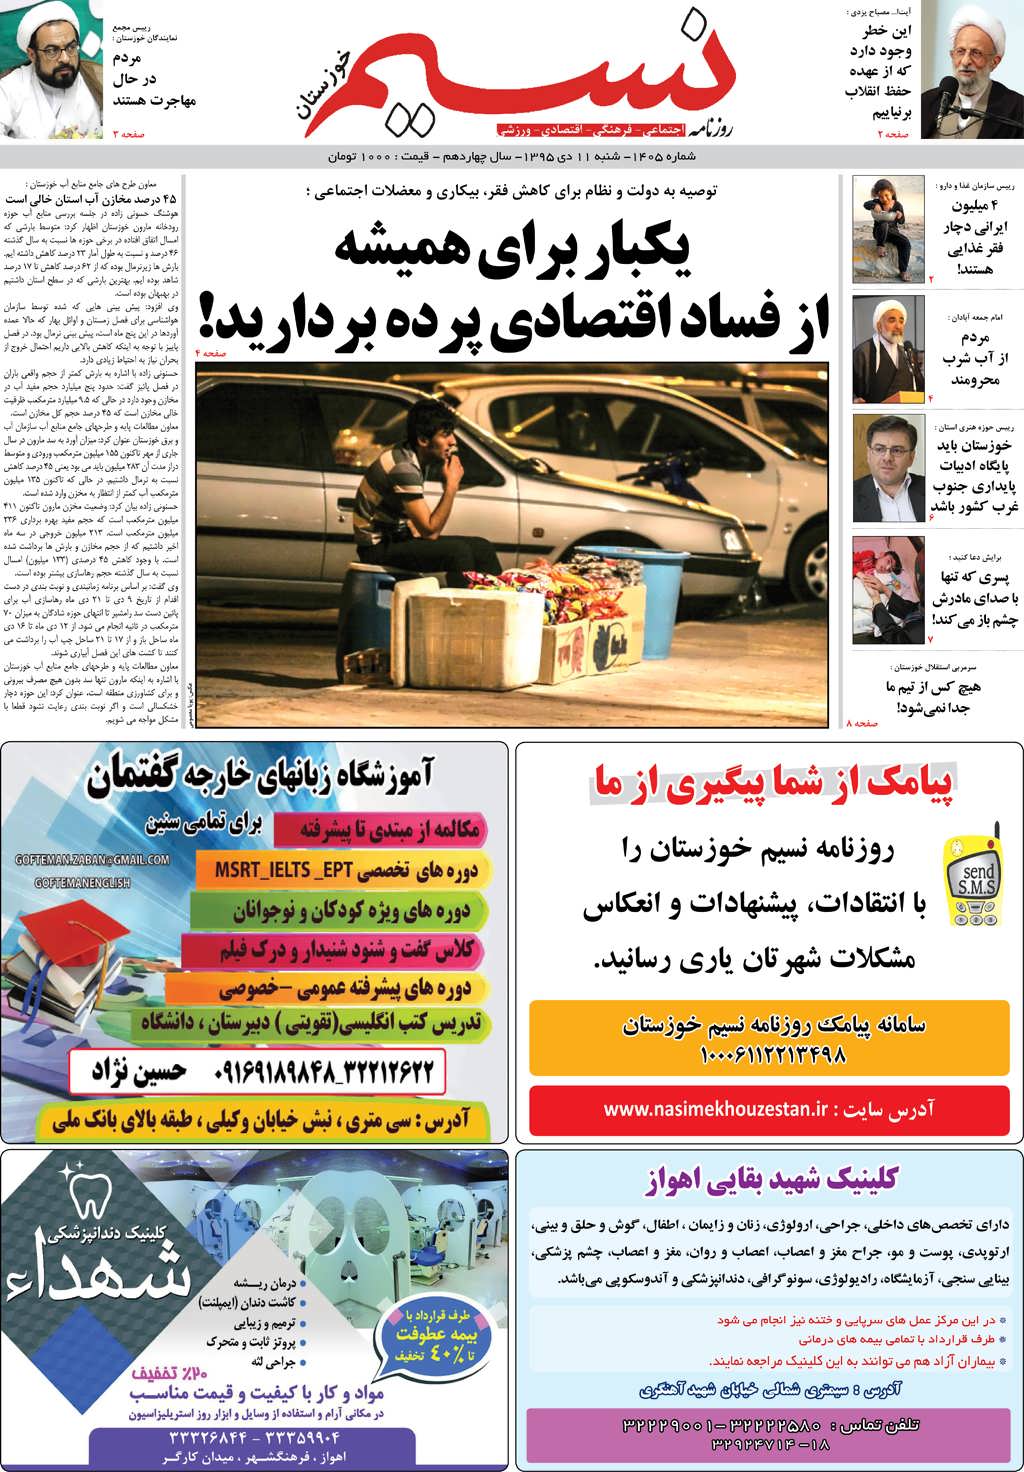 صفحه اصلی روزنامه نسیم شماره 1405